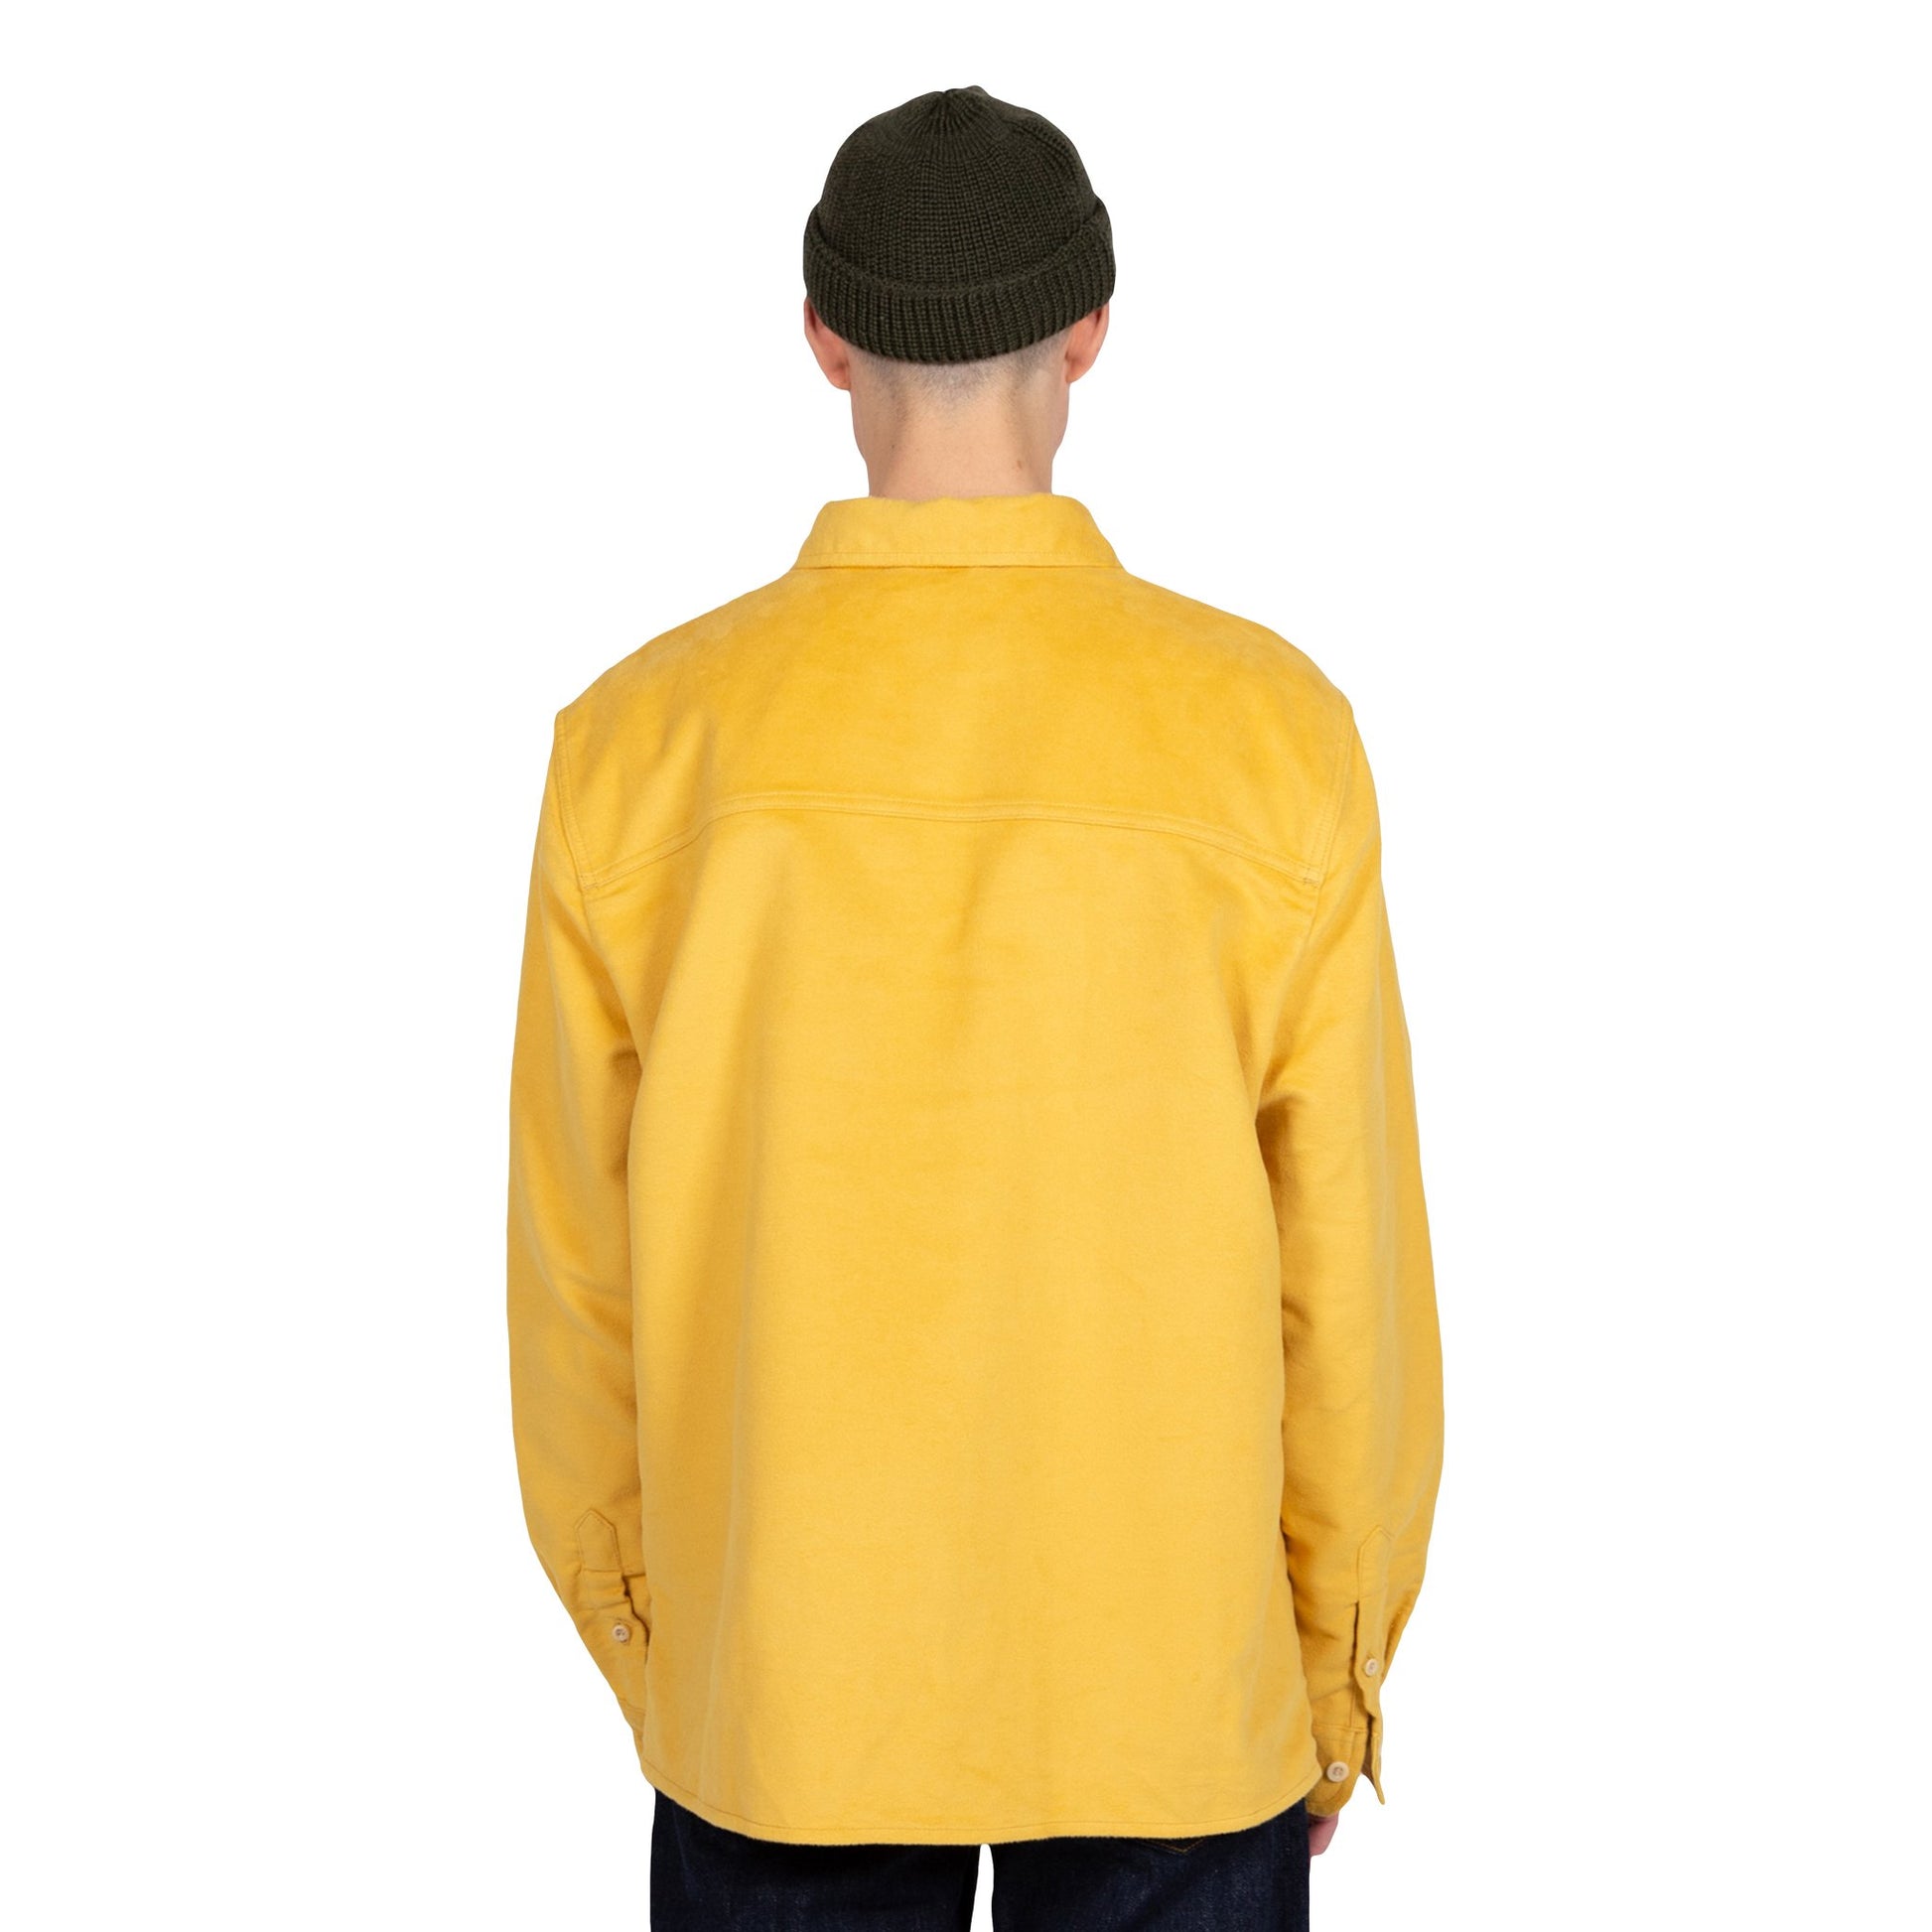 Albam Moleskin Duncan Shirt Overshirt Yellow Button Down